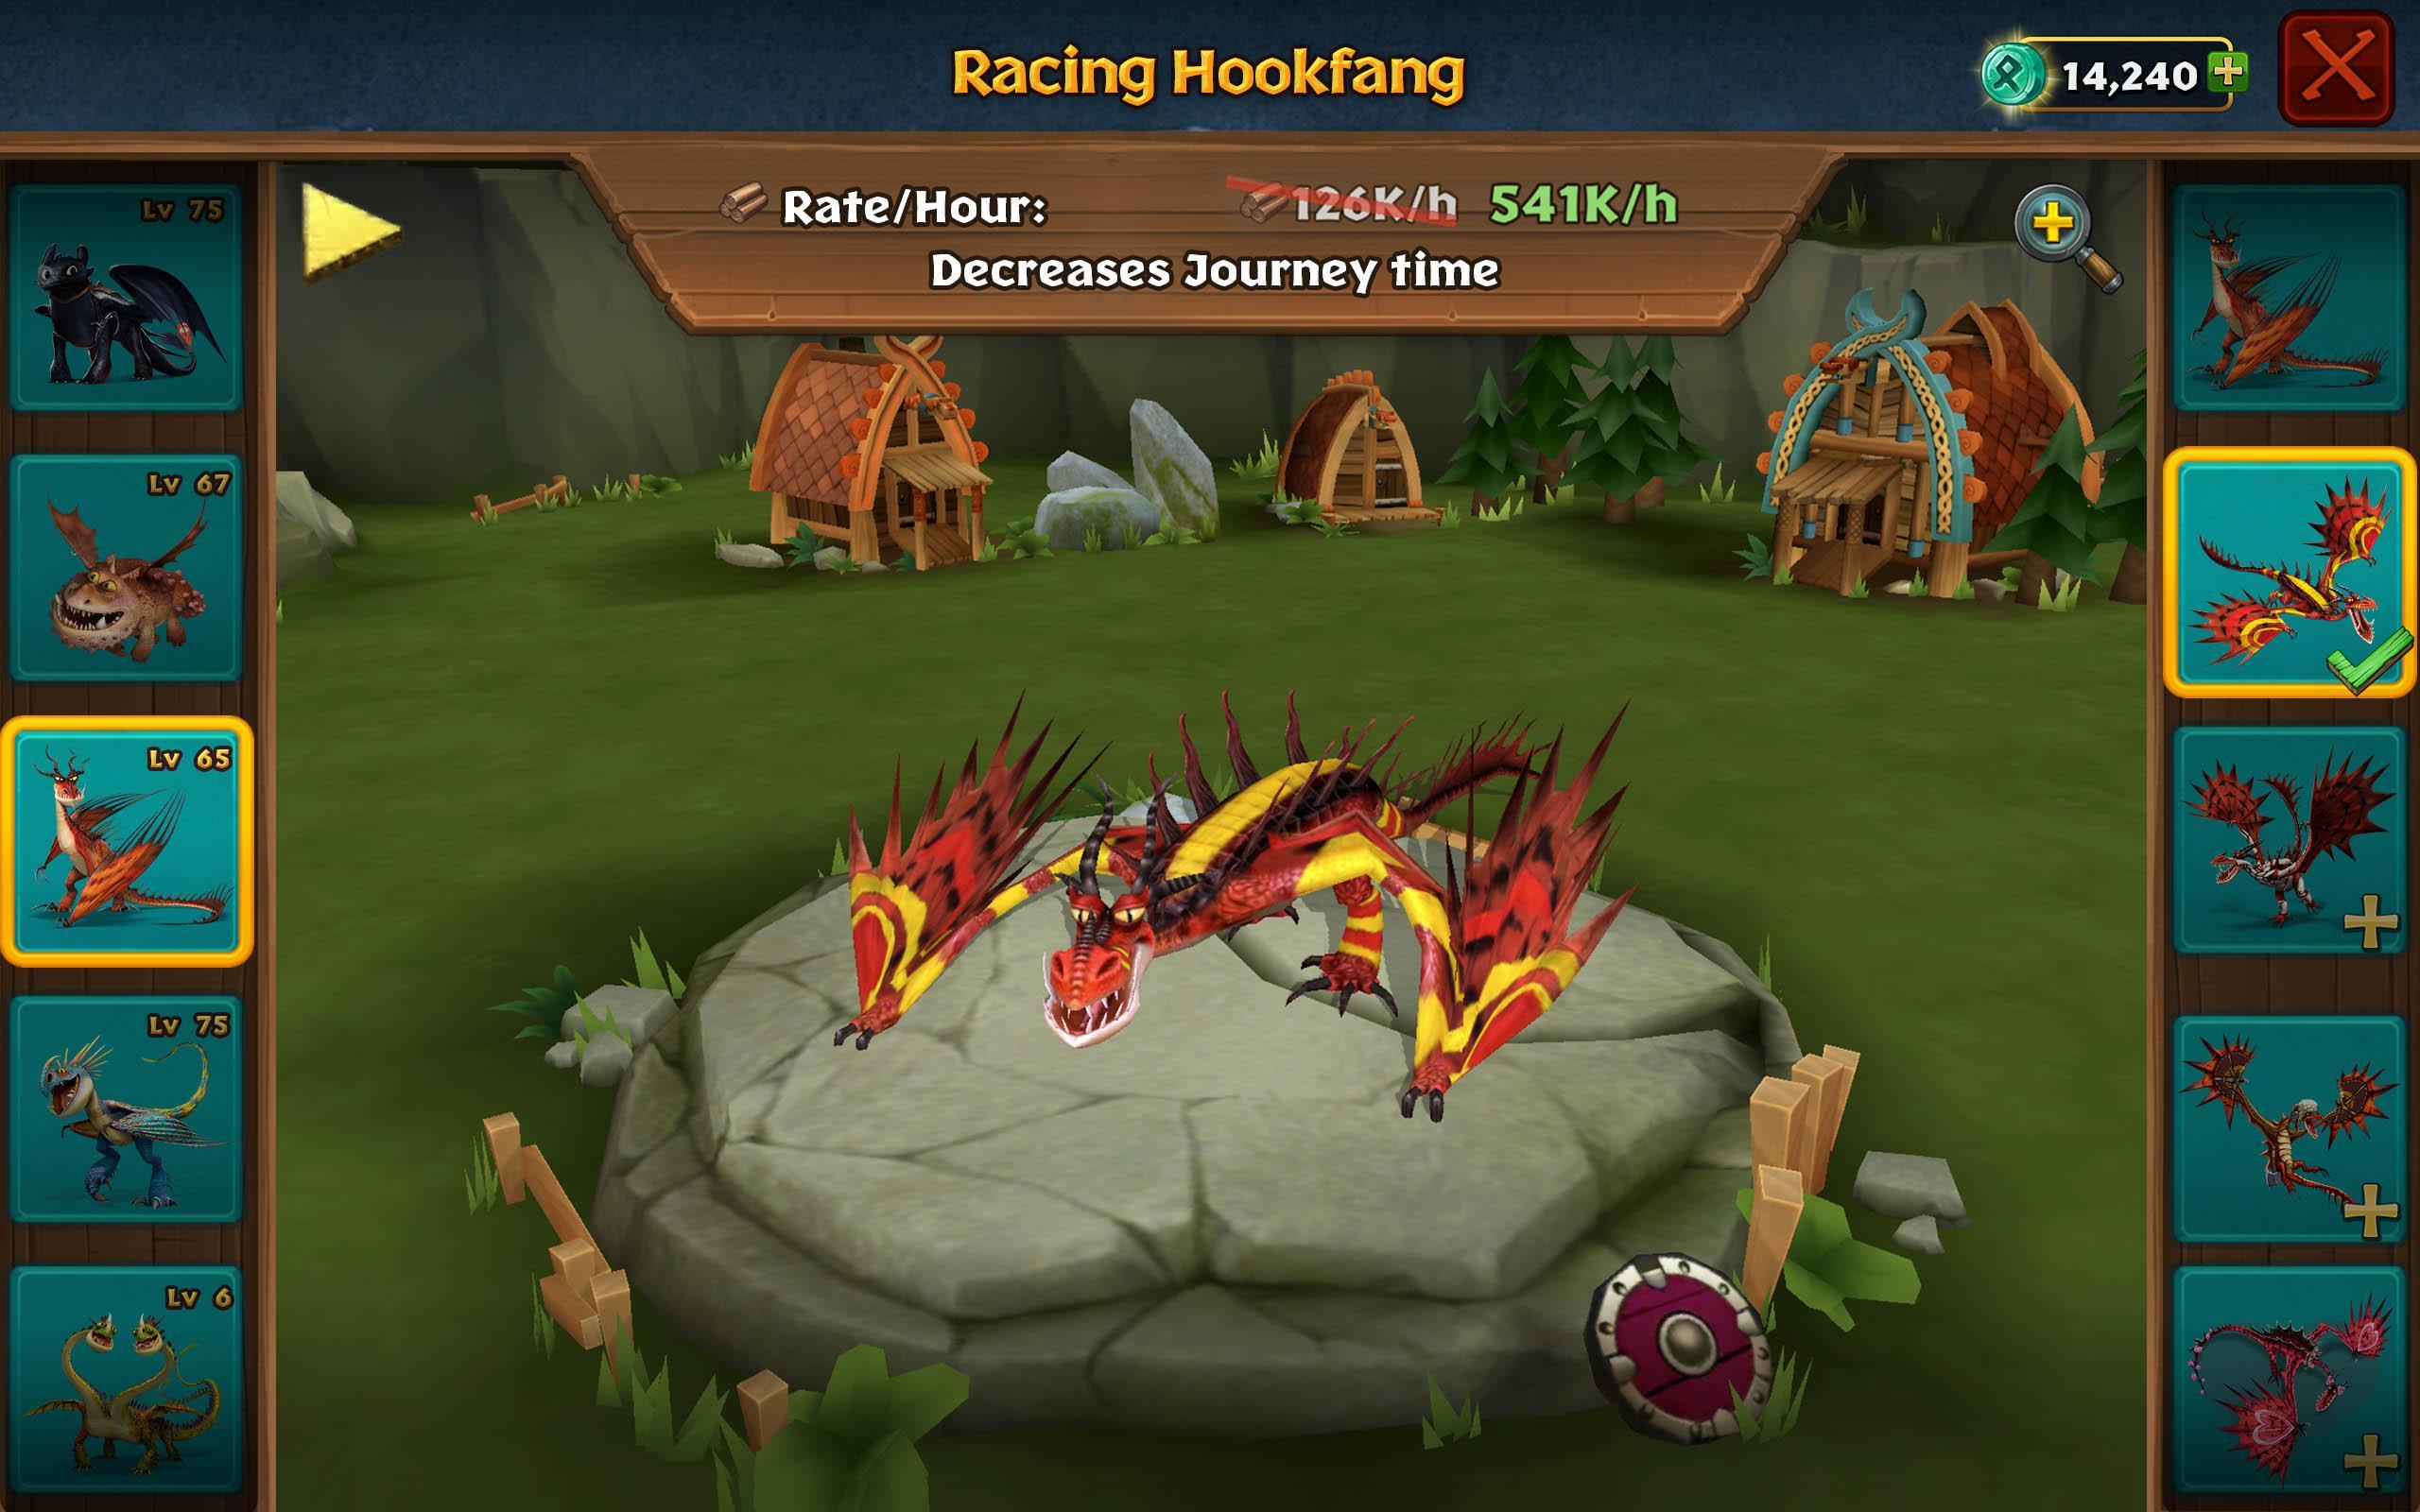 Dragon Training Story um clássico jogo de estratégia de desenvolvimento de  feras míticas baseado em turnos de fantasia versão móvel andróide iOS apk  baixar gratuitamente-TapTap